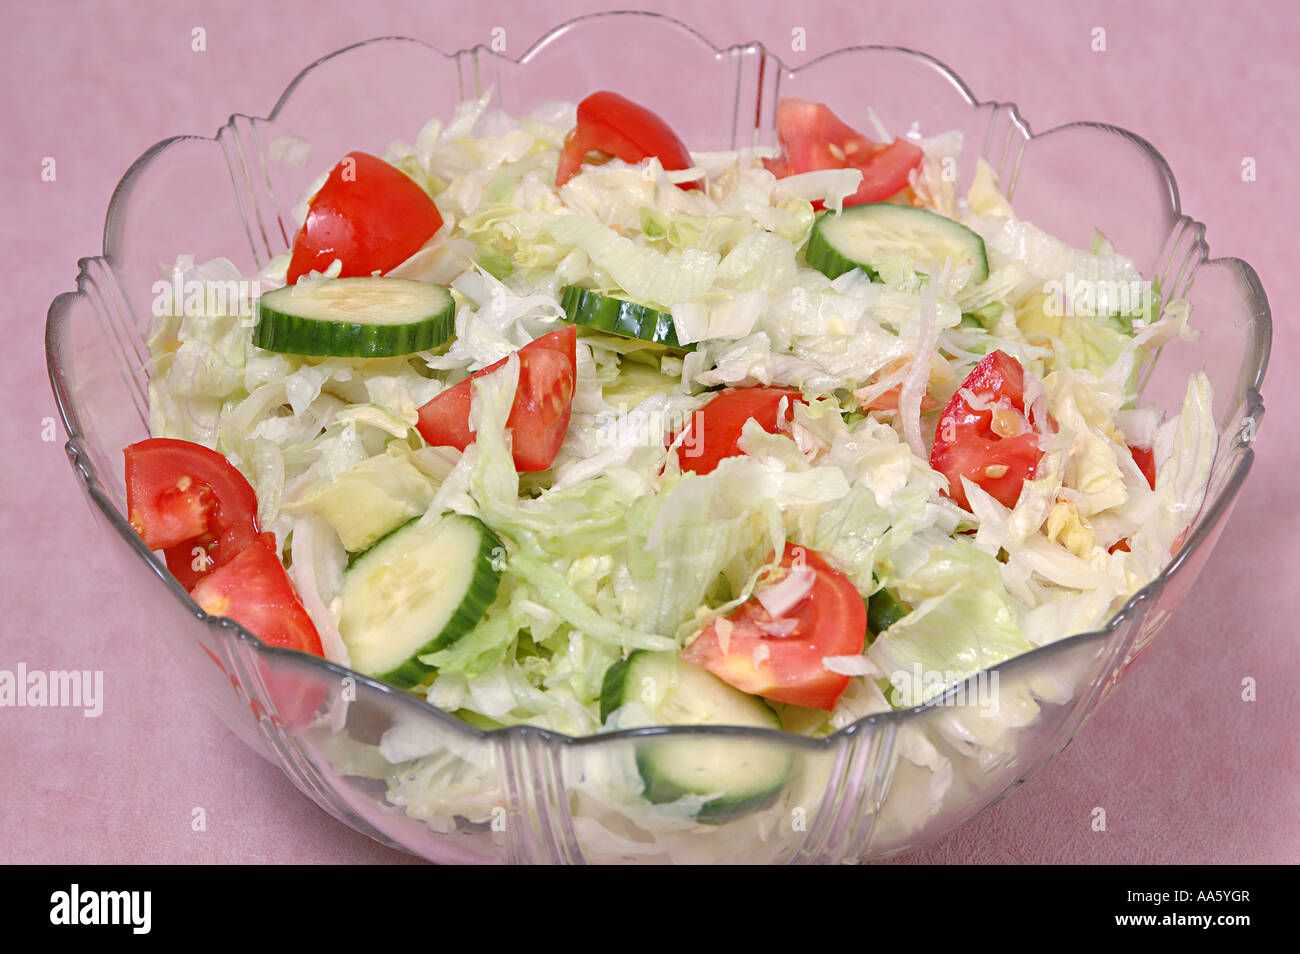 ANG103765 Salade de concombre aliments en morceaux de tomates hachées Salade burg de glace dans un bol en verre Banque D'Images